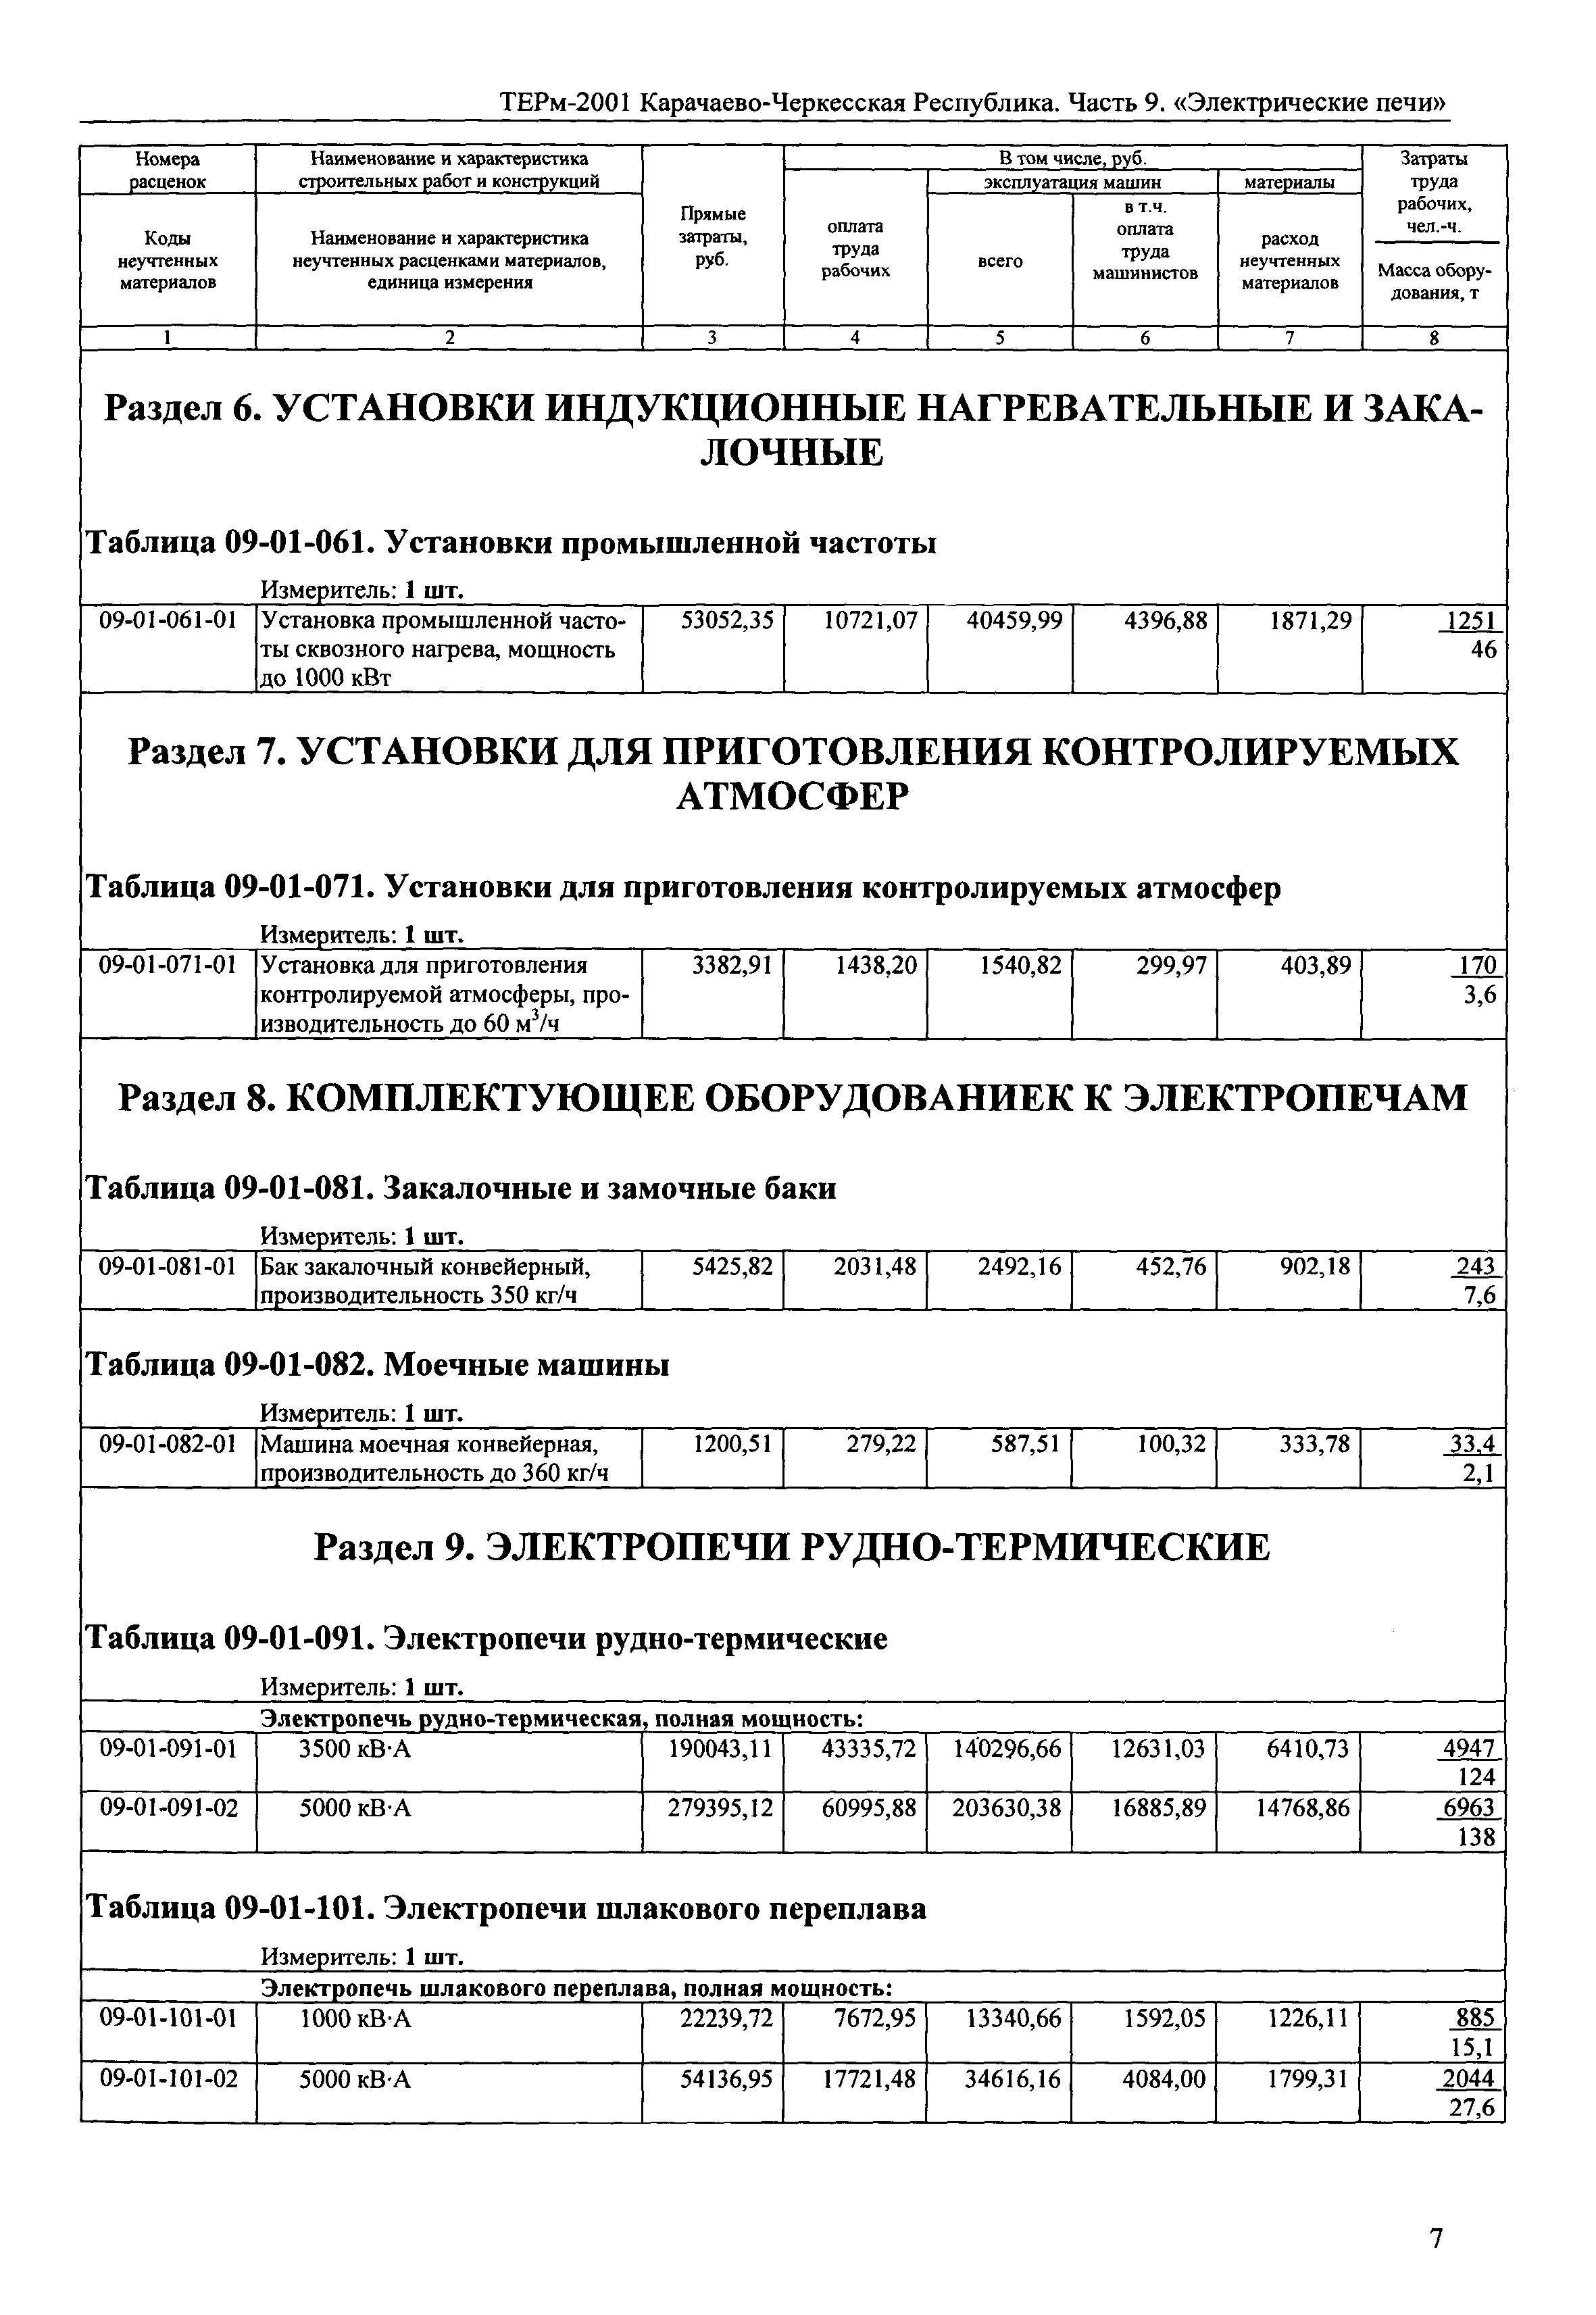 ТЕРм Карачаево-Черкесская Республика 09-2001